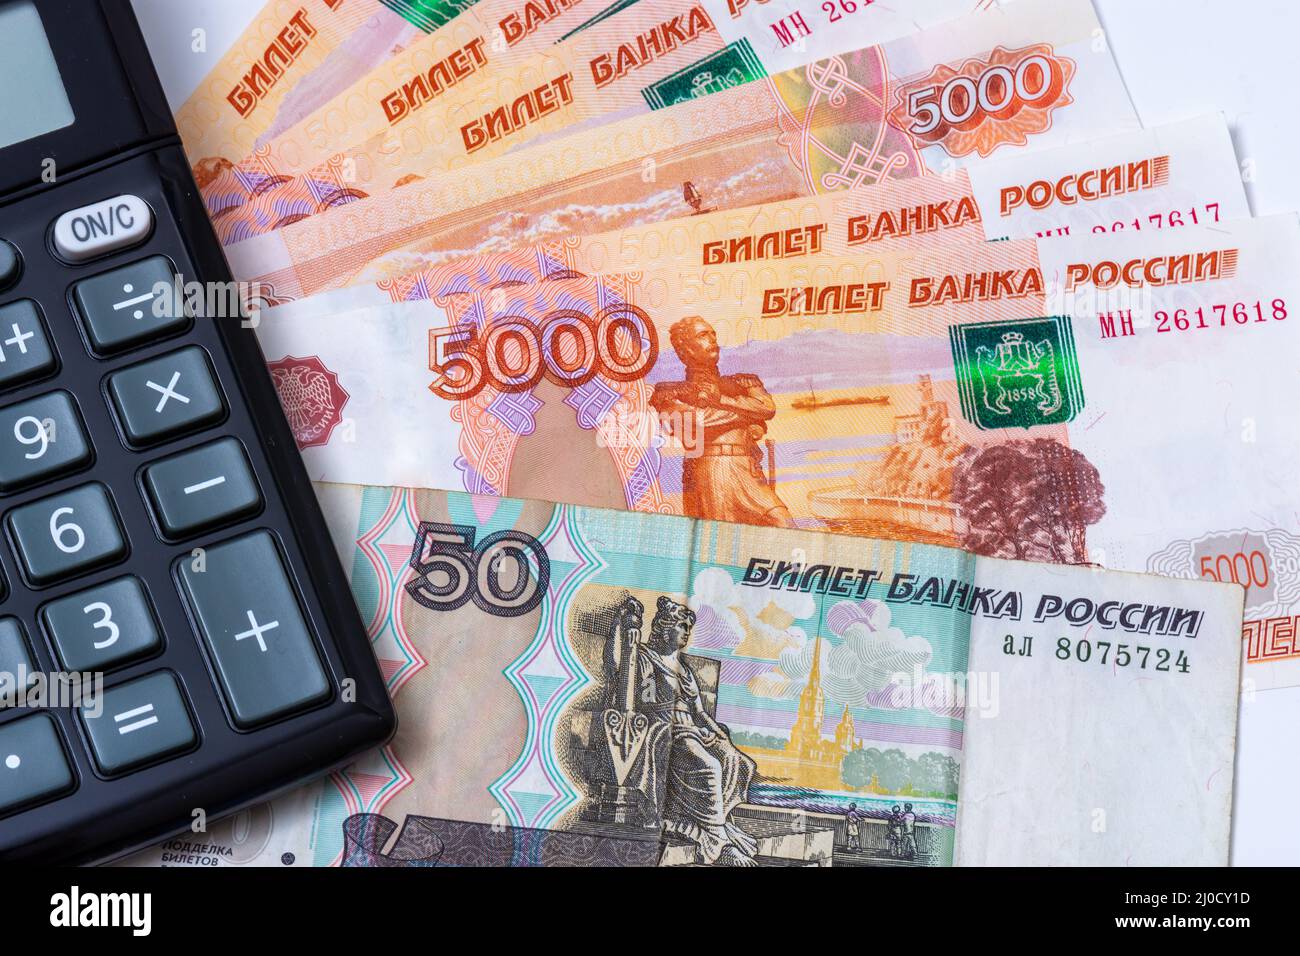 Efectivo de la Federación de Rusia (rublos) con una calculadora. Detalle de  los billetes rusos con las palabras 'Banknotte of Russia' escritas en ruso  Fotografía de stock - Alamy